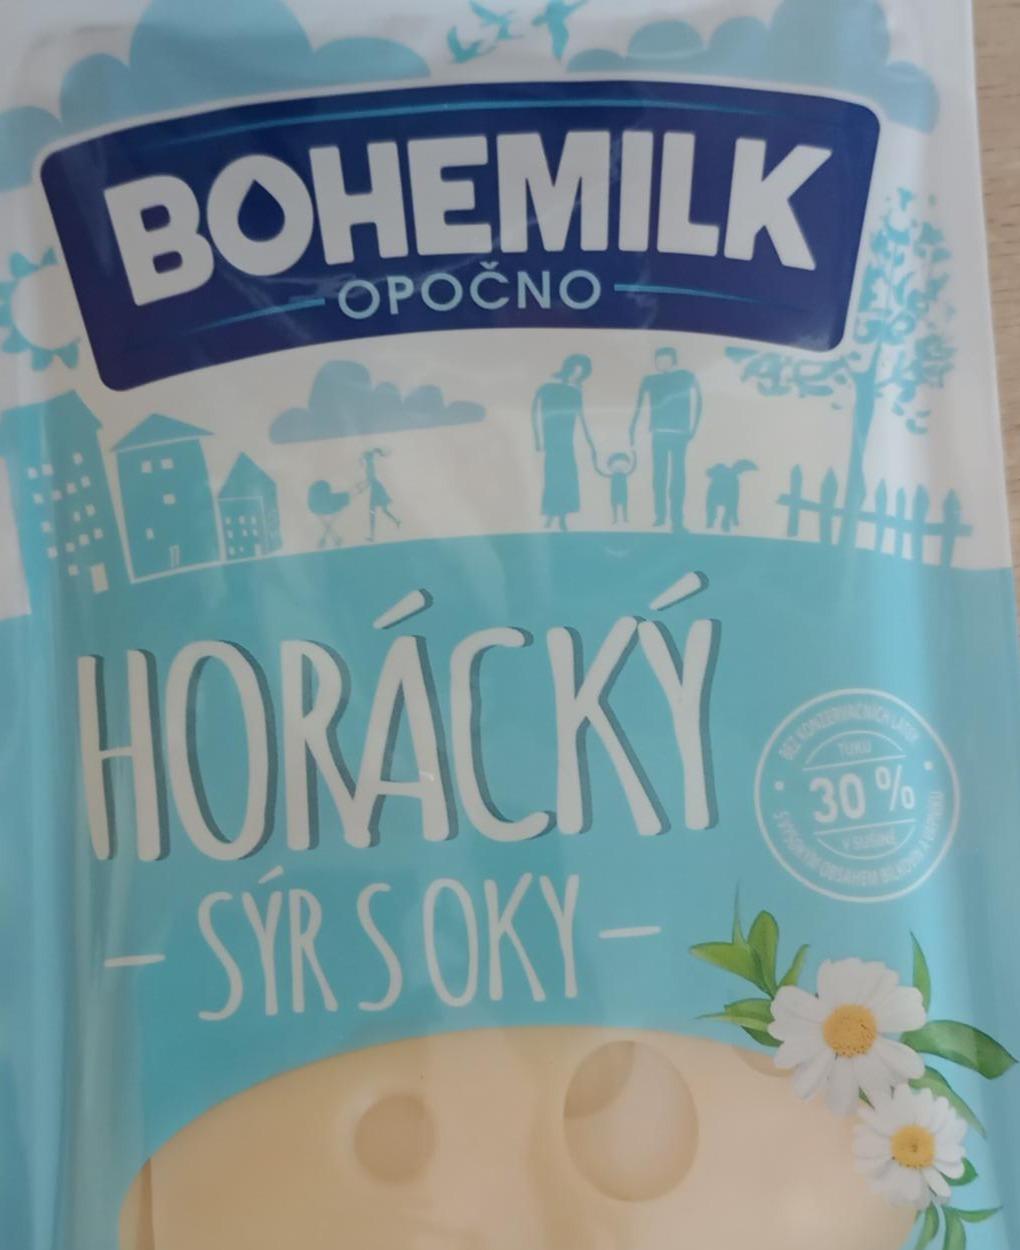 Fotografie - Horácký sýr s oky 30% Bohemilk